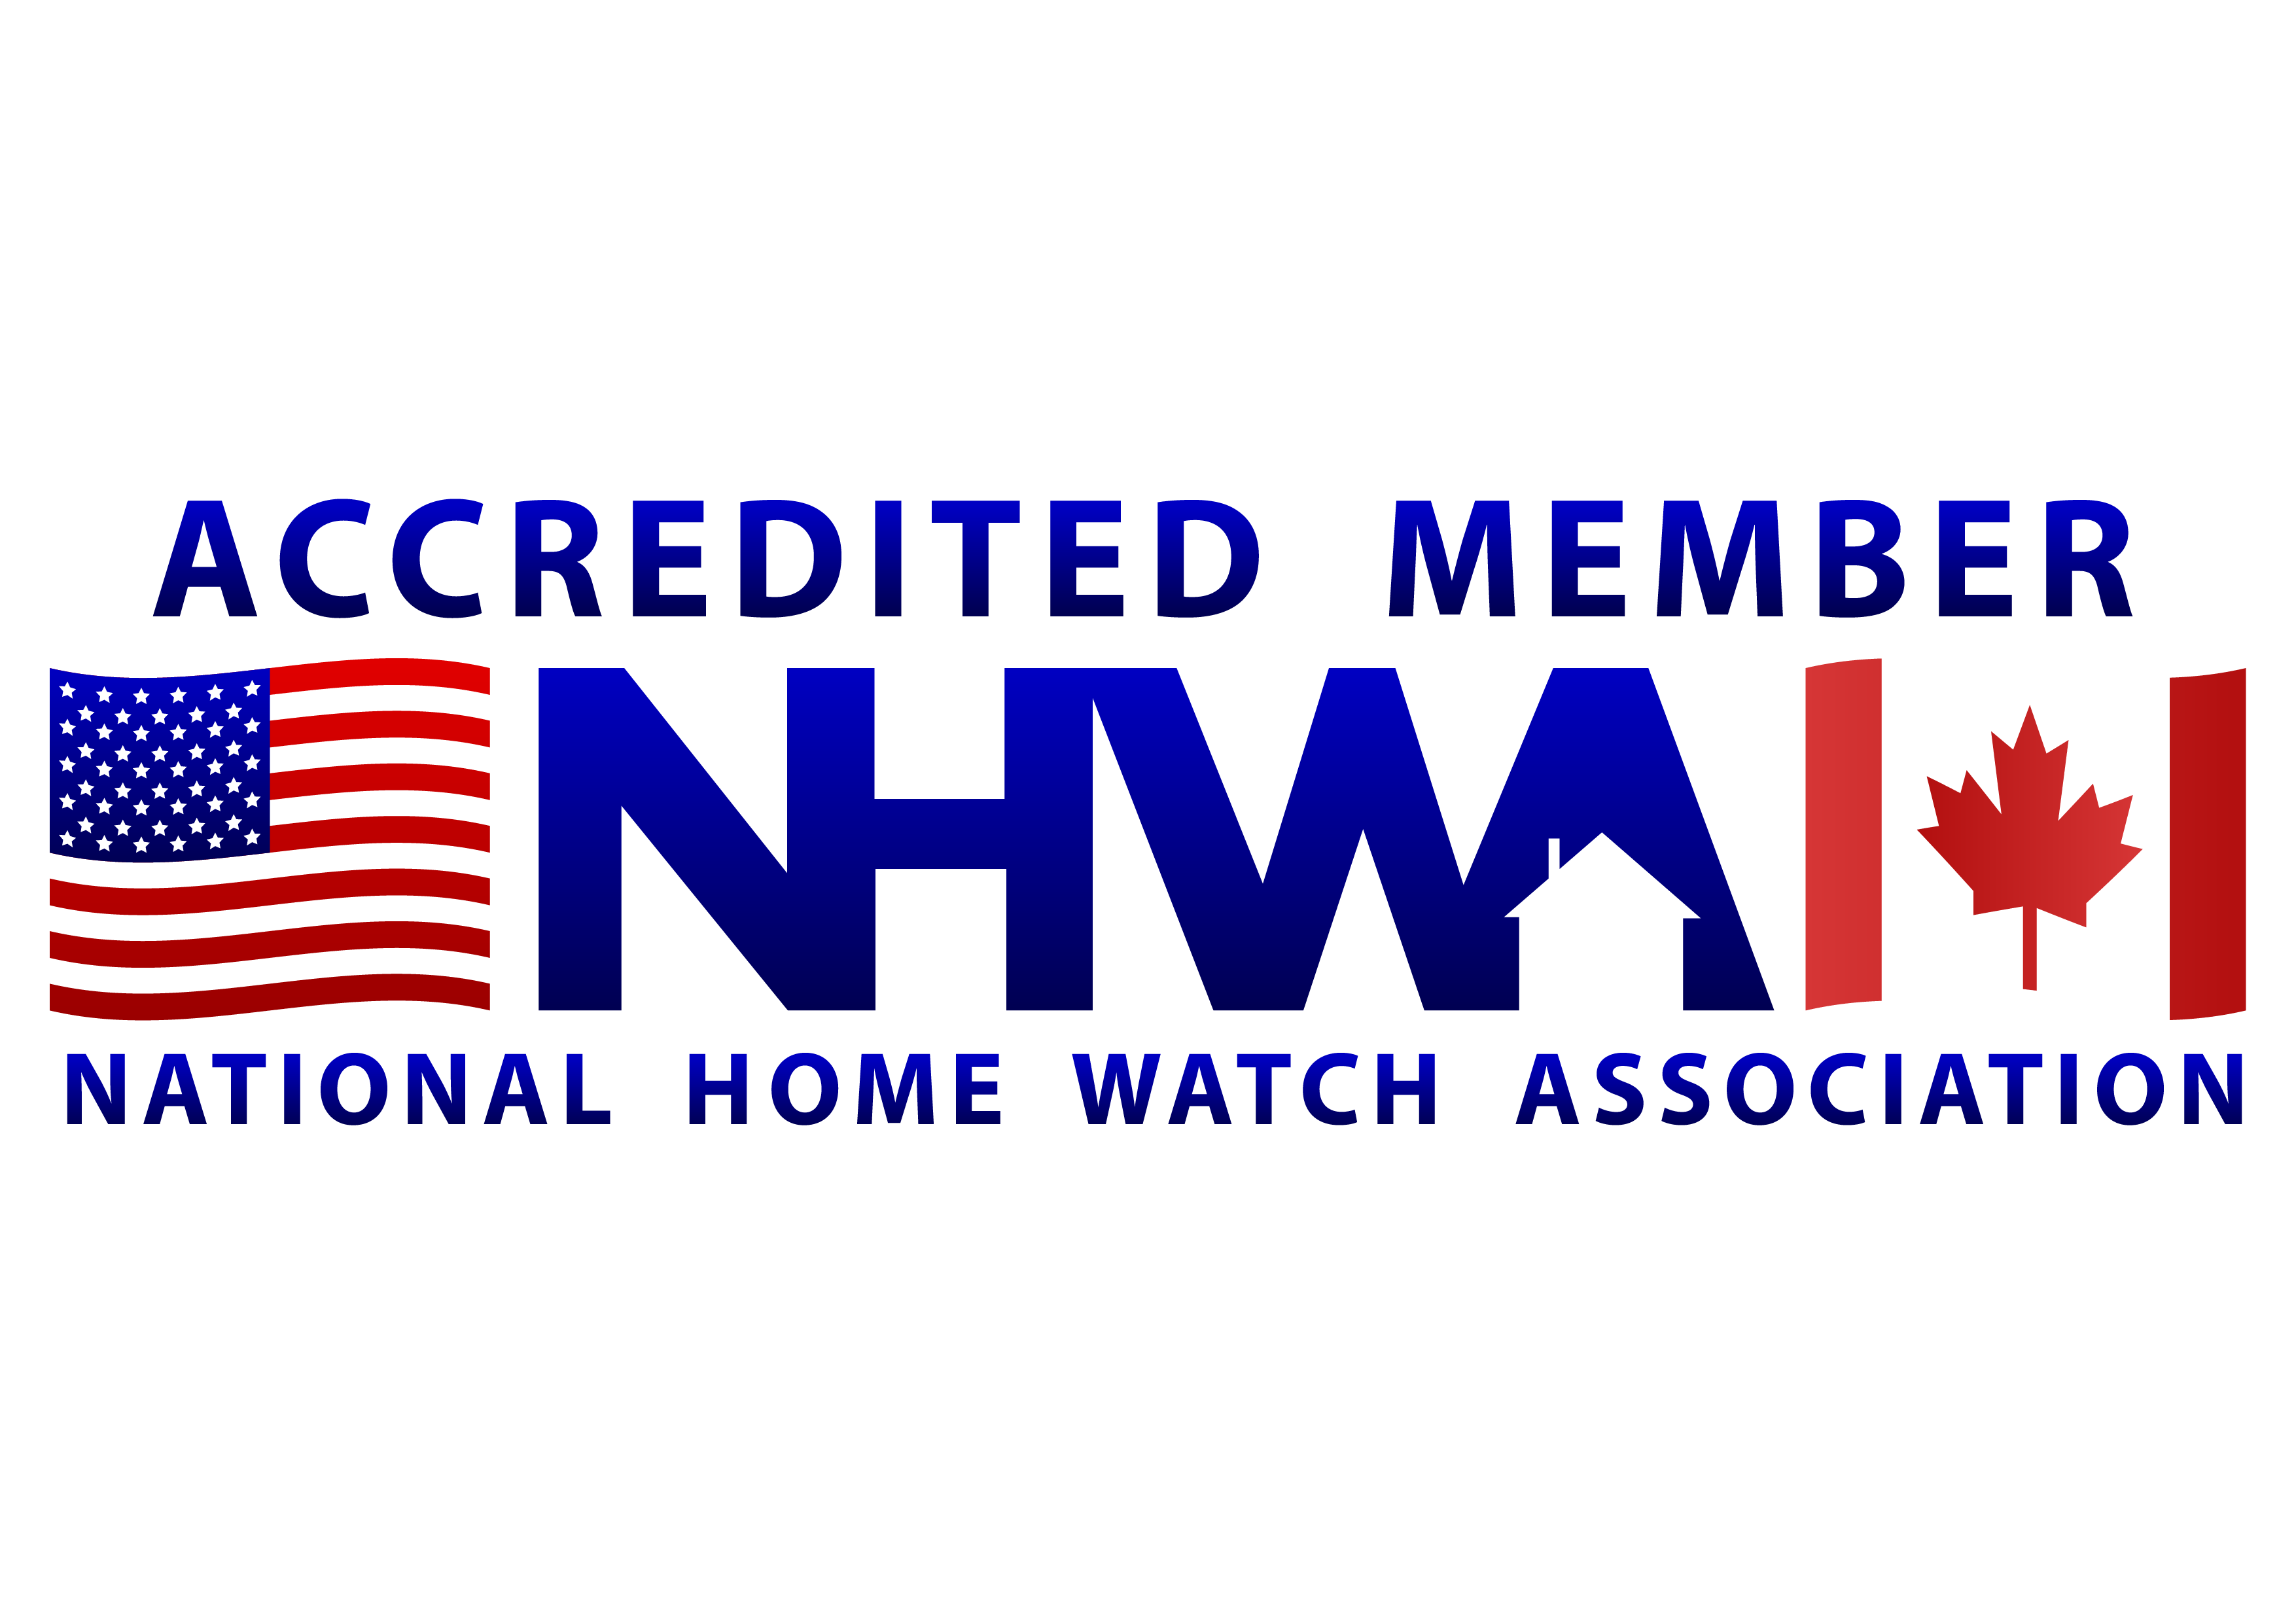 NHWA-accredited-member-logo-380x131.jpg